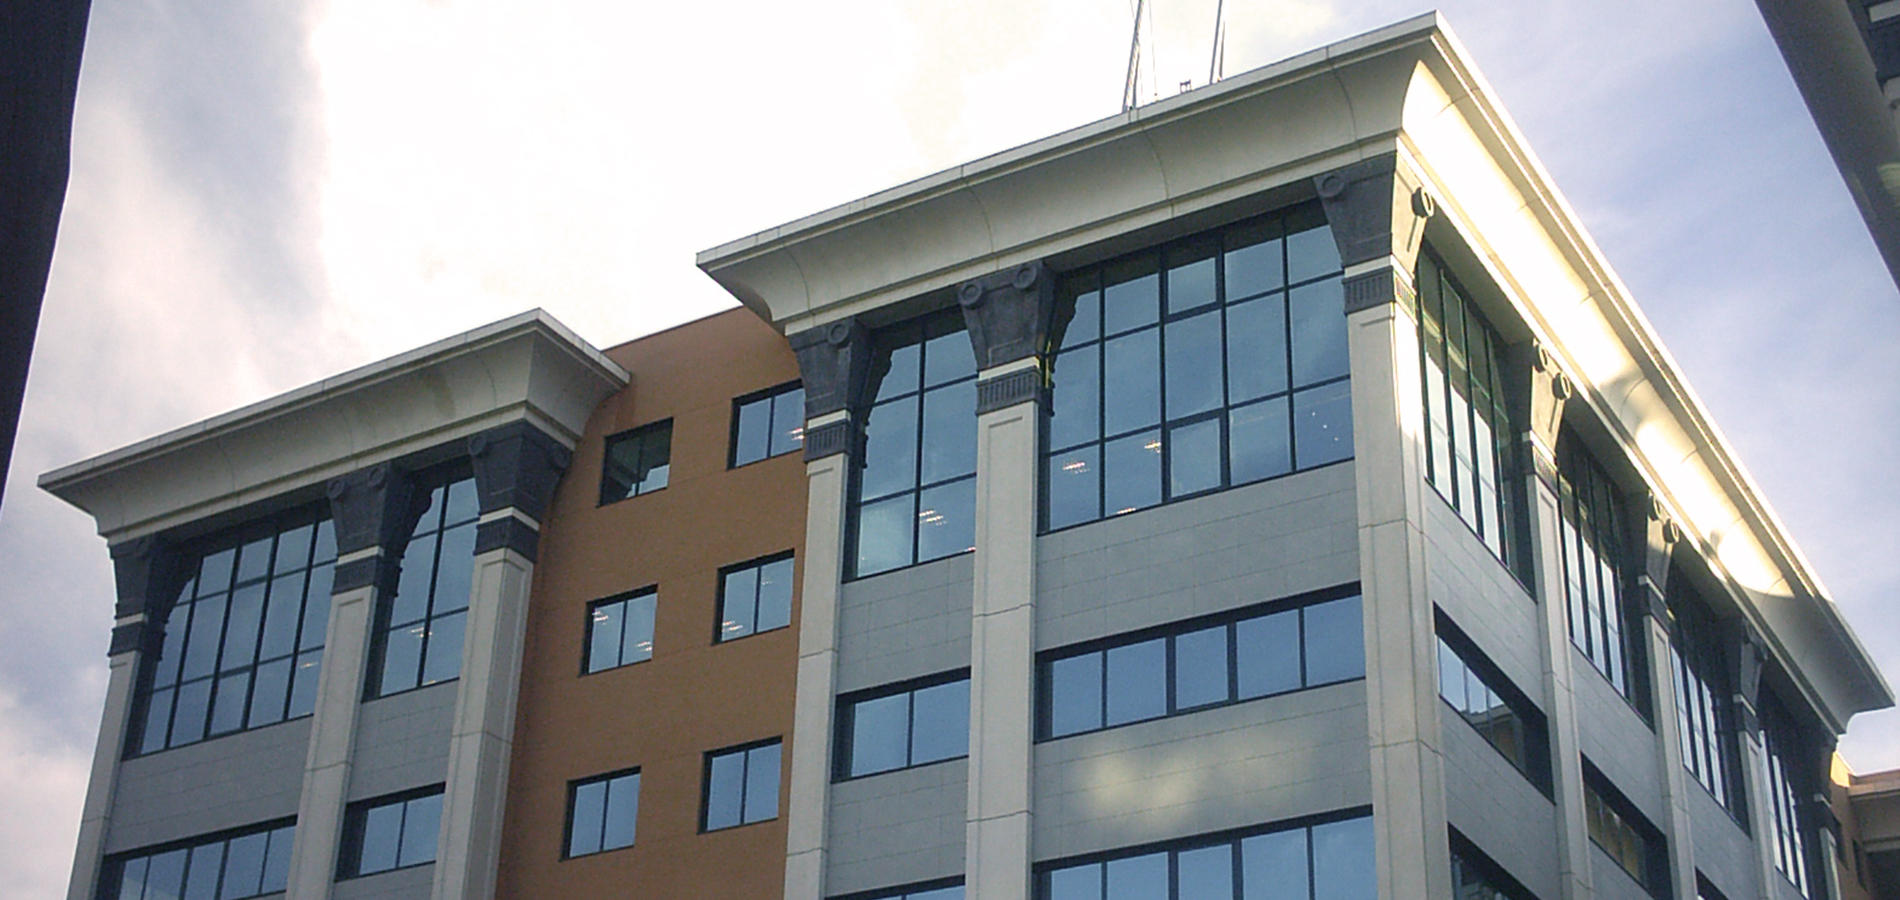 Sando ejecuta la construcción del complejo de oficinas en la avenida de Manoteras, formado por dos edificios 626 plazas de aparcamiento.